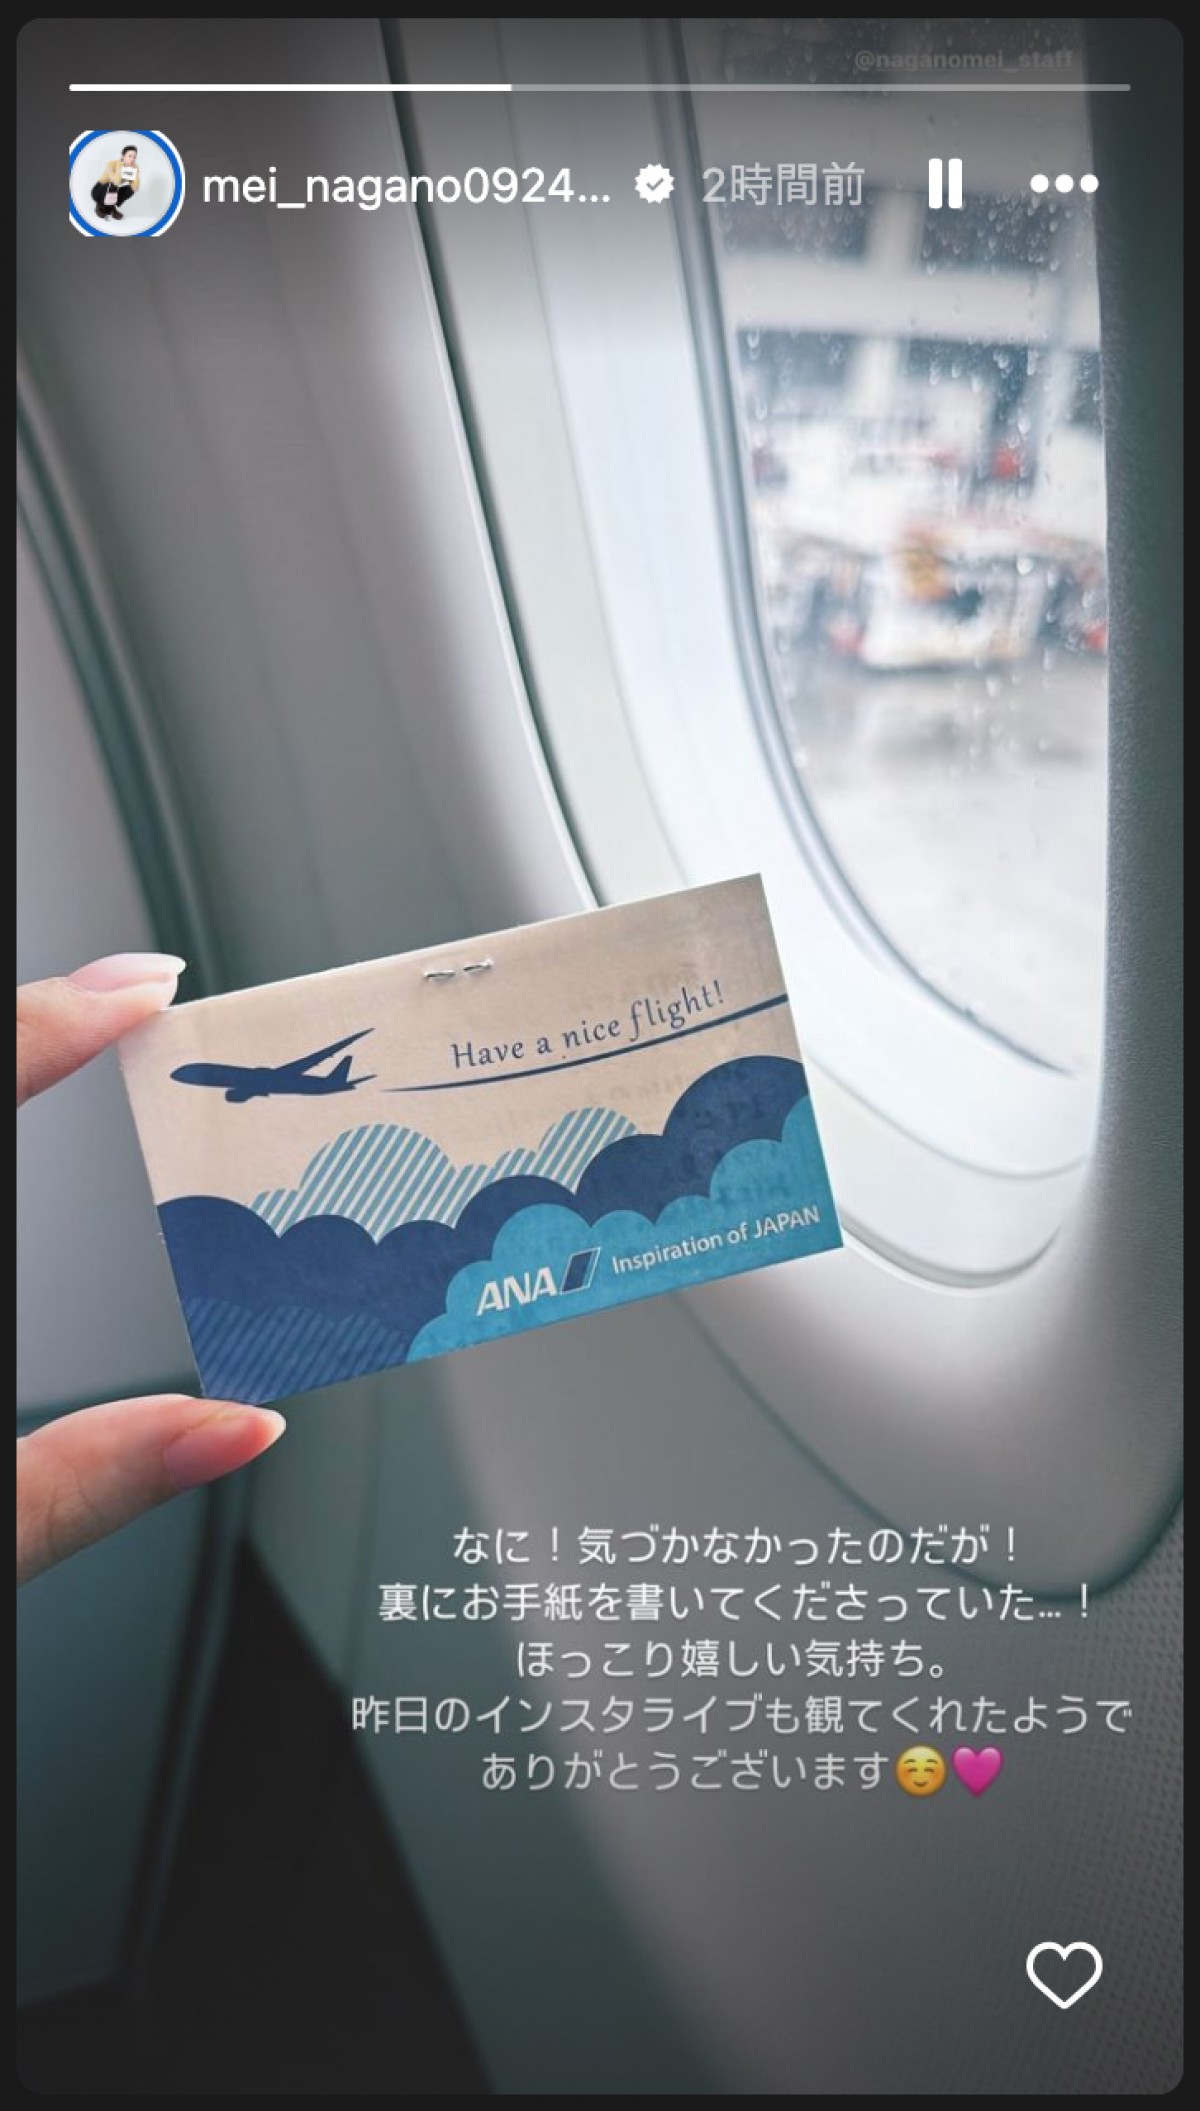 永野芽郁、空港スタッフの気遣いに感激「搭乗案内券の裏に素敵な手紙が」